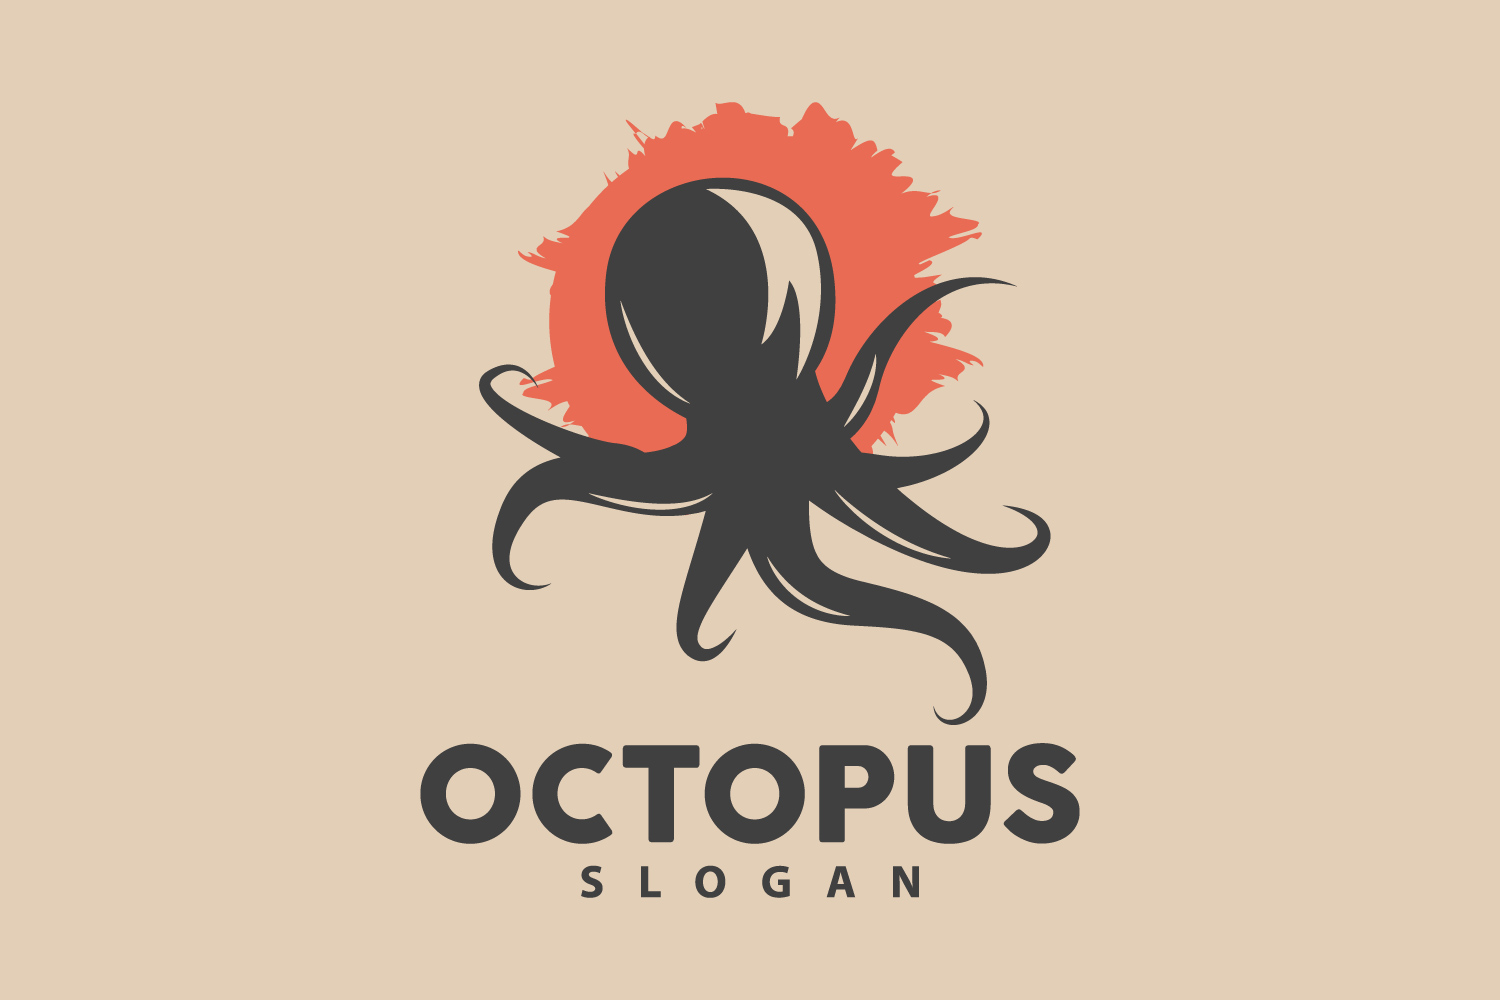 Octopus Logo Old Retro Vintage DesignV10